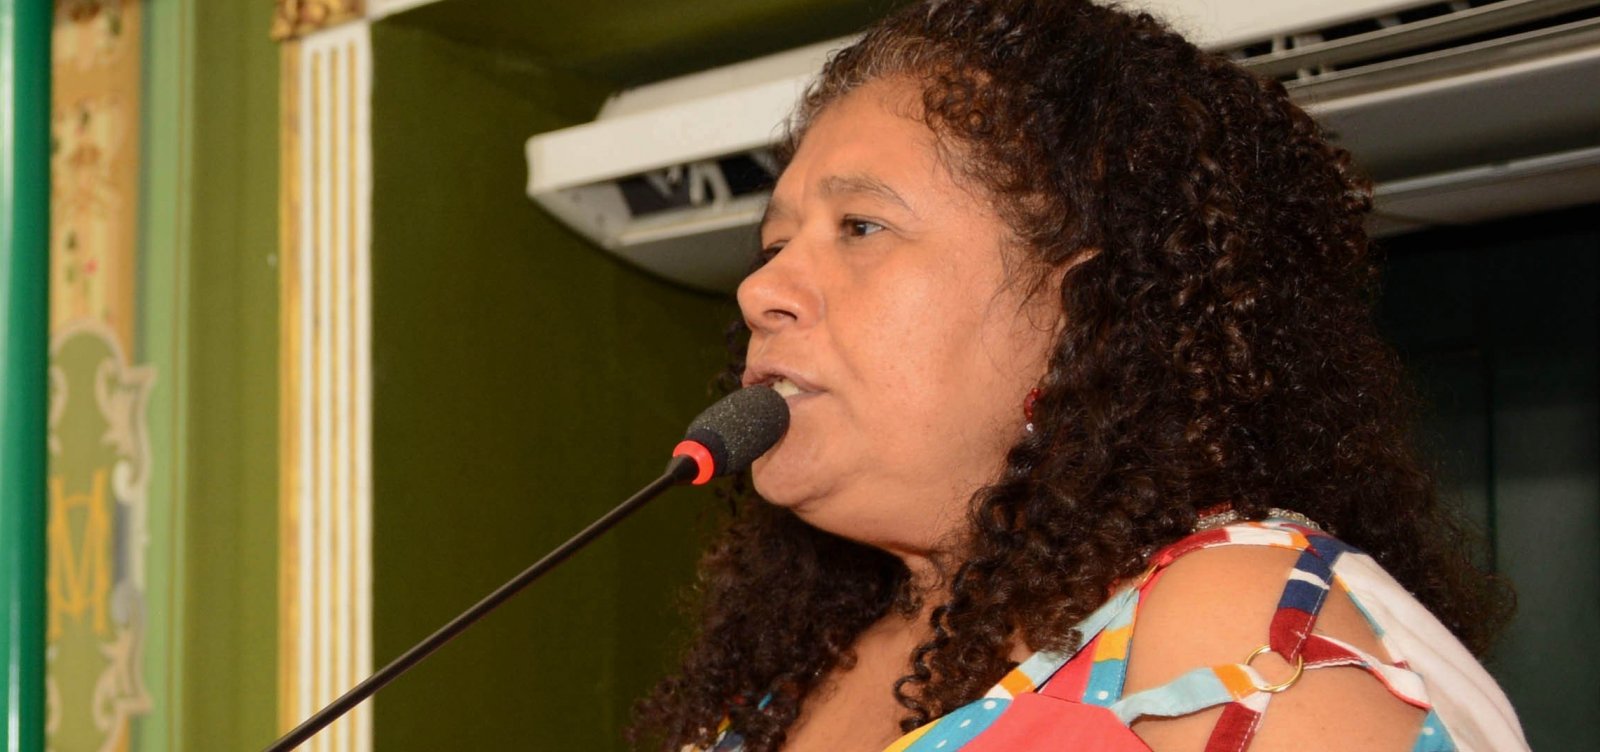 Oposição questiona compra de passagens de ônibus pela prefeitura de Salvador: ‘Submissão’